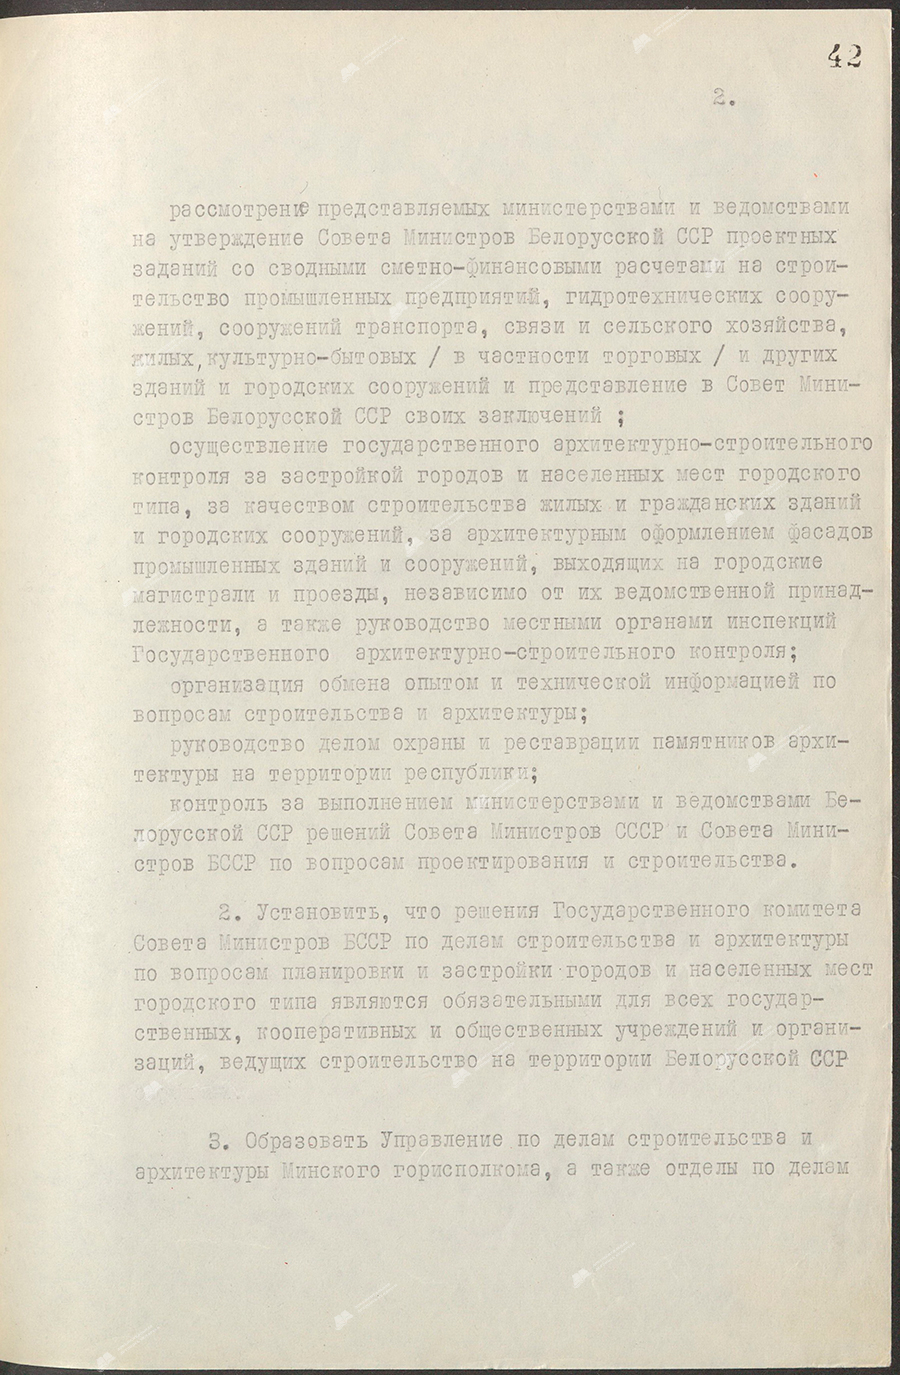 Beschluss Nr. 544 des Ministerrats der Weißrussischen SSR «Über die Bildung des Staatskomitees des Ministerrats der BSSR für Bauwesen und Architektur»-с. 1